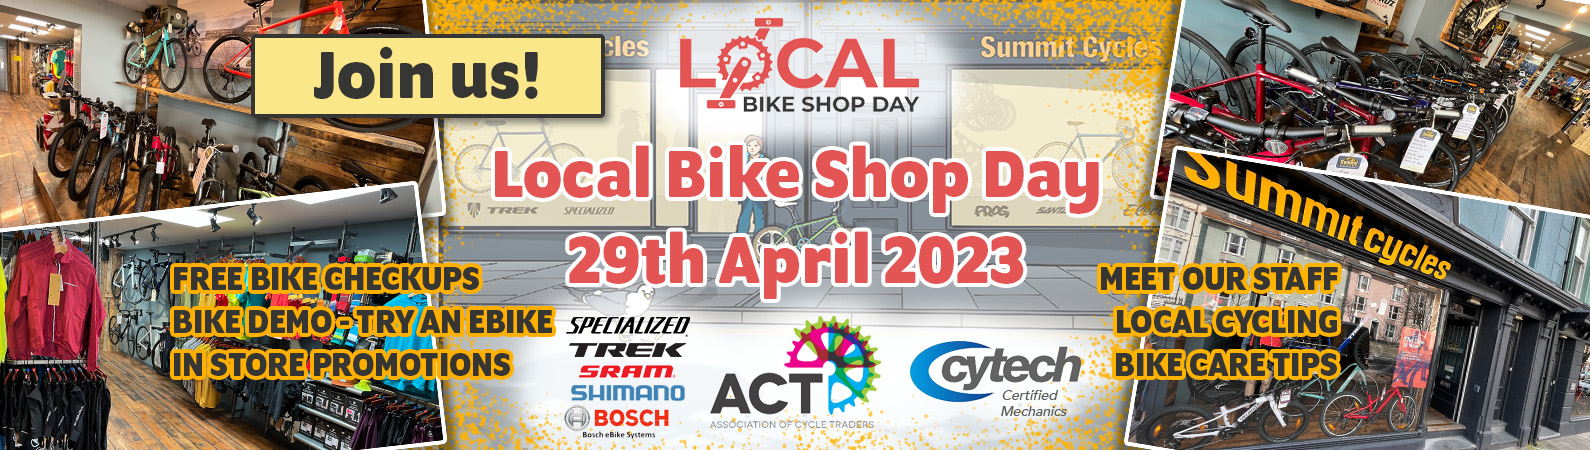 Local Bike Shop Day - Saturday April 29th 2023